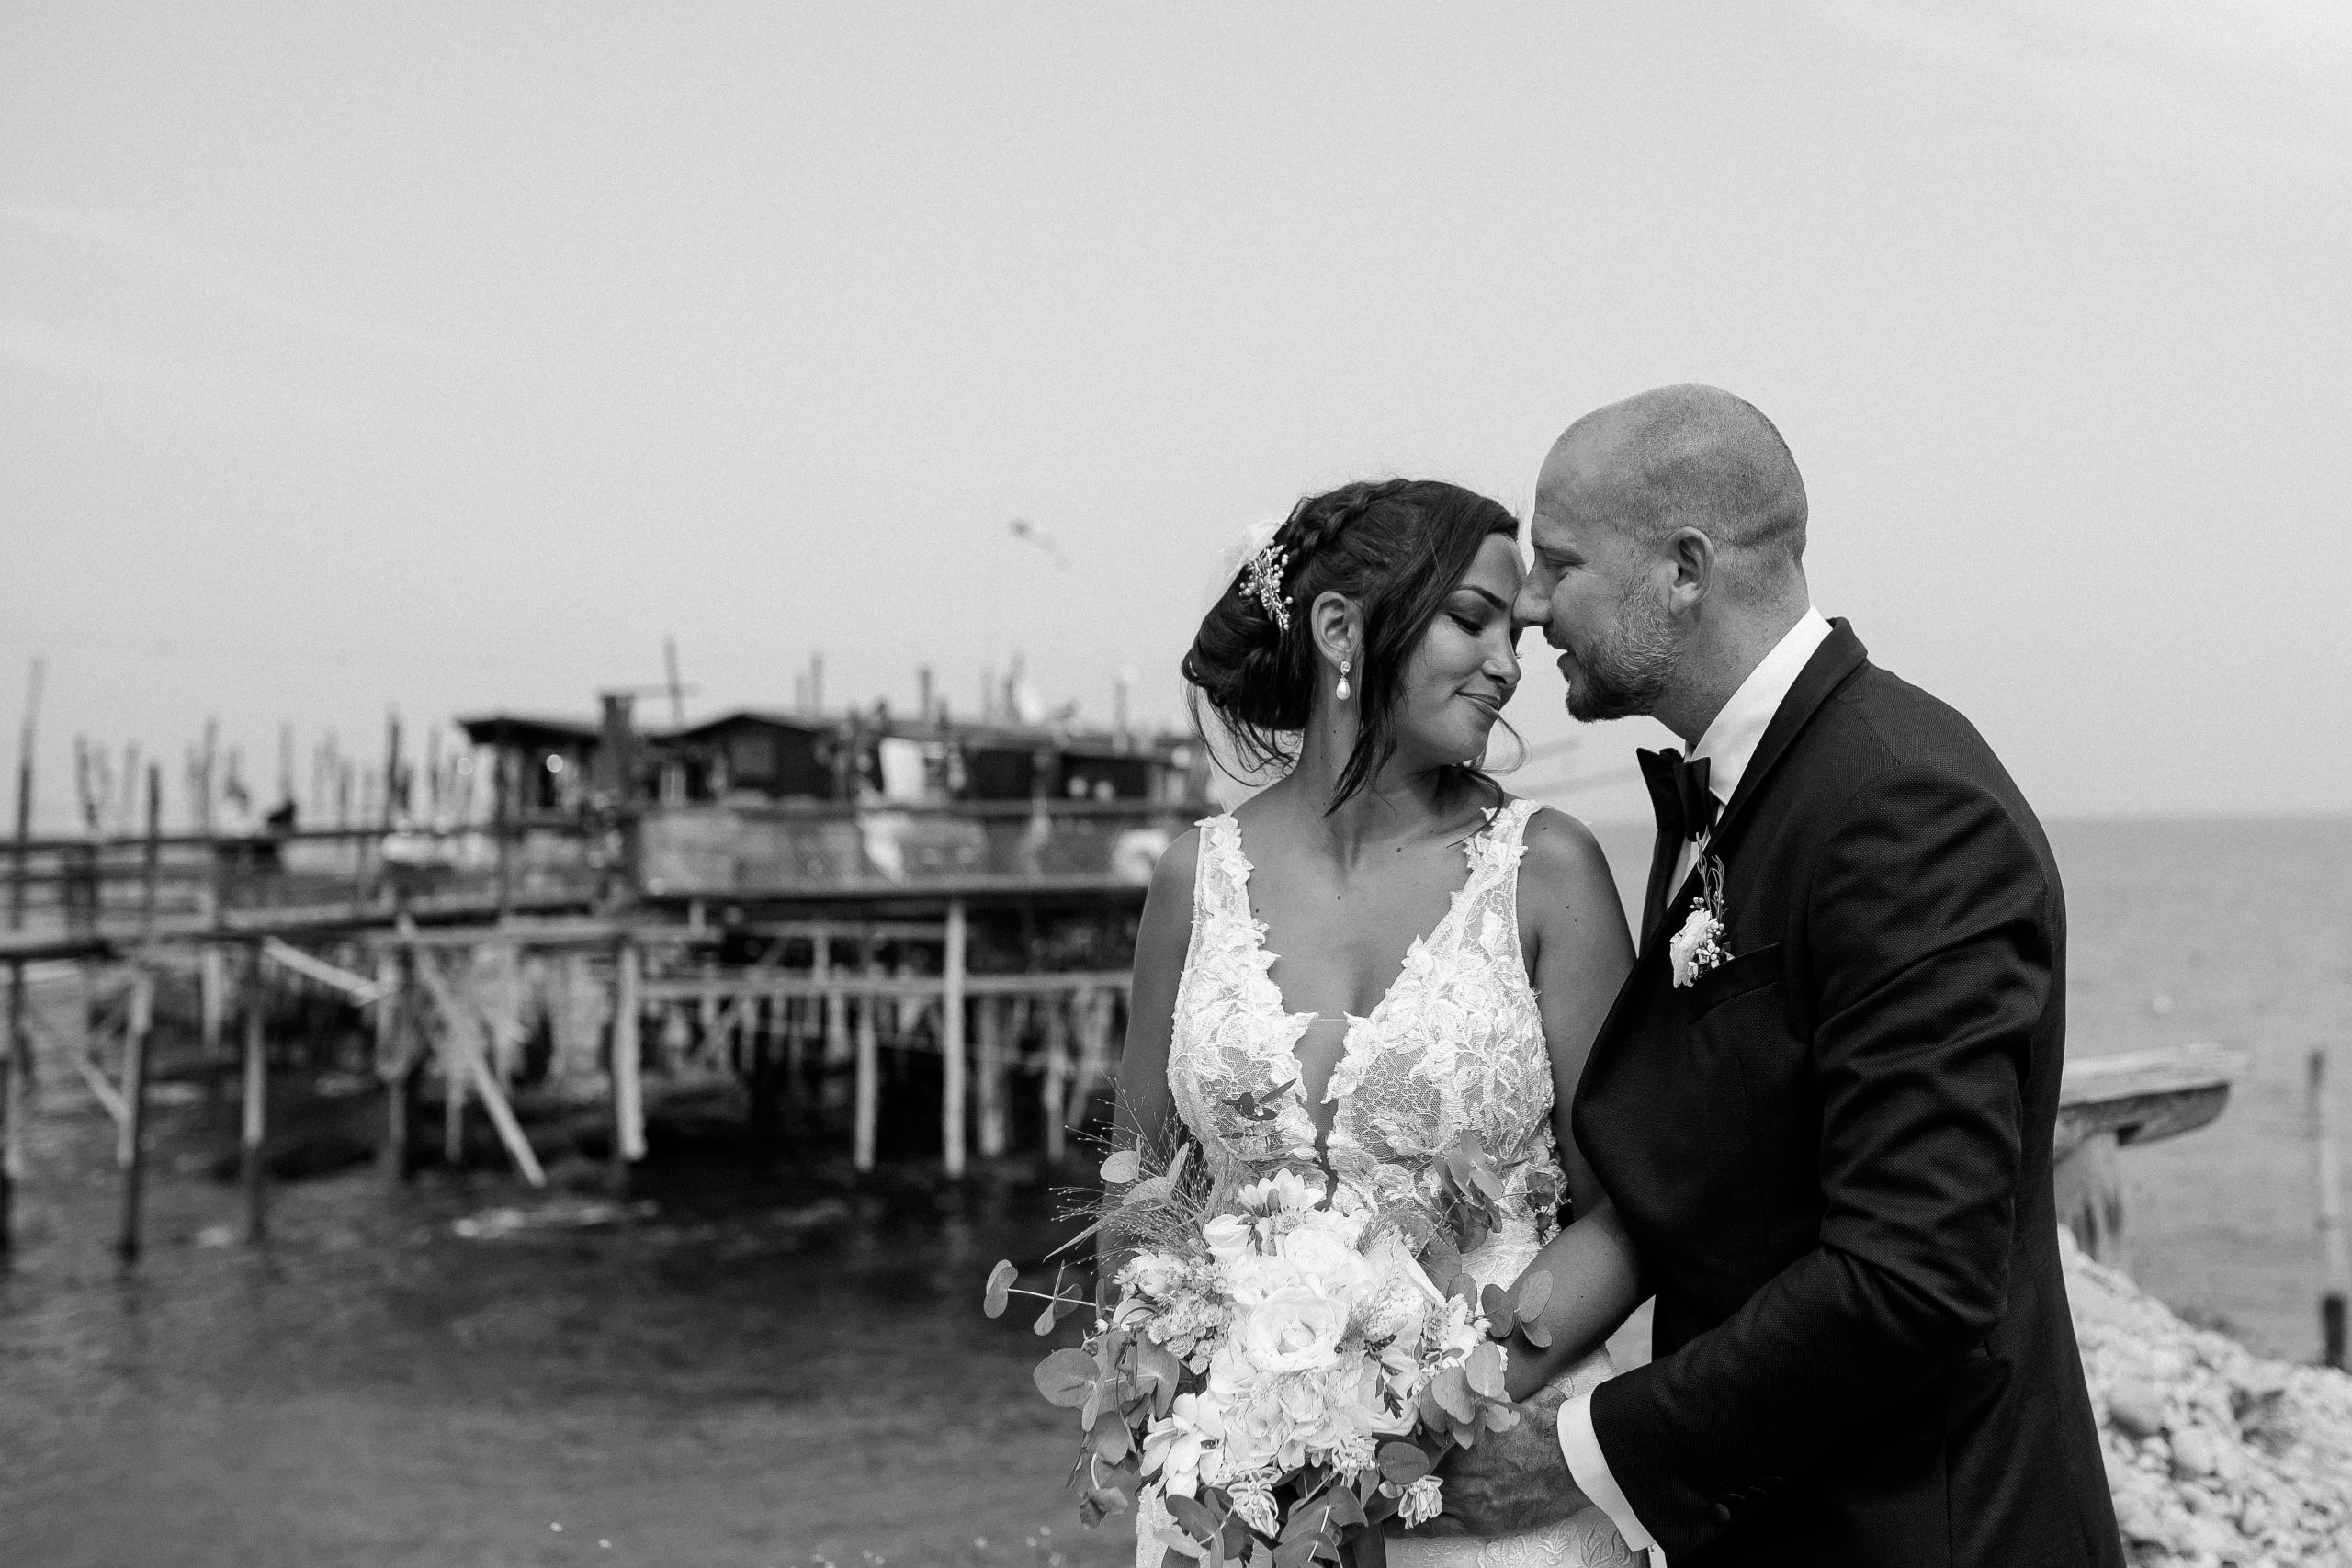 Aida + Tim | Hochzeitsfotografen am Bodensee Jenny & Alessio - Pescara, Italien  - Hochzeitsfotografie von Aida und Tim